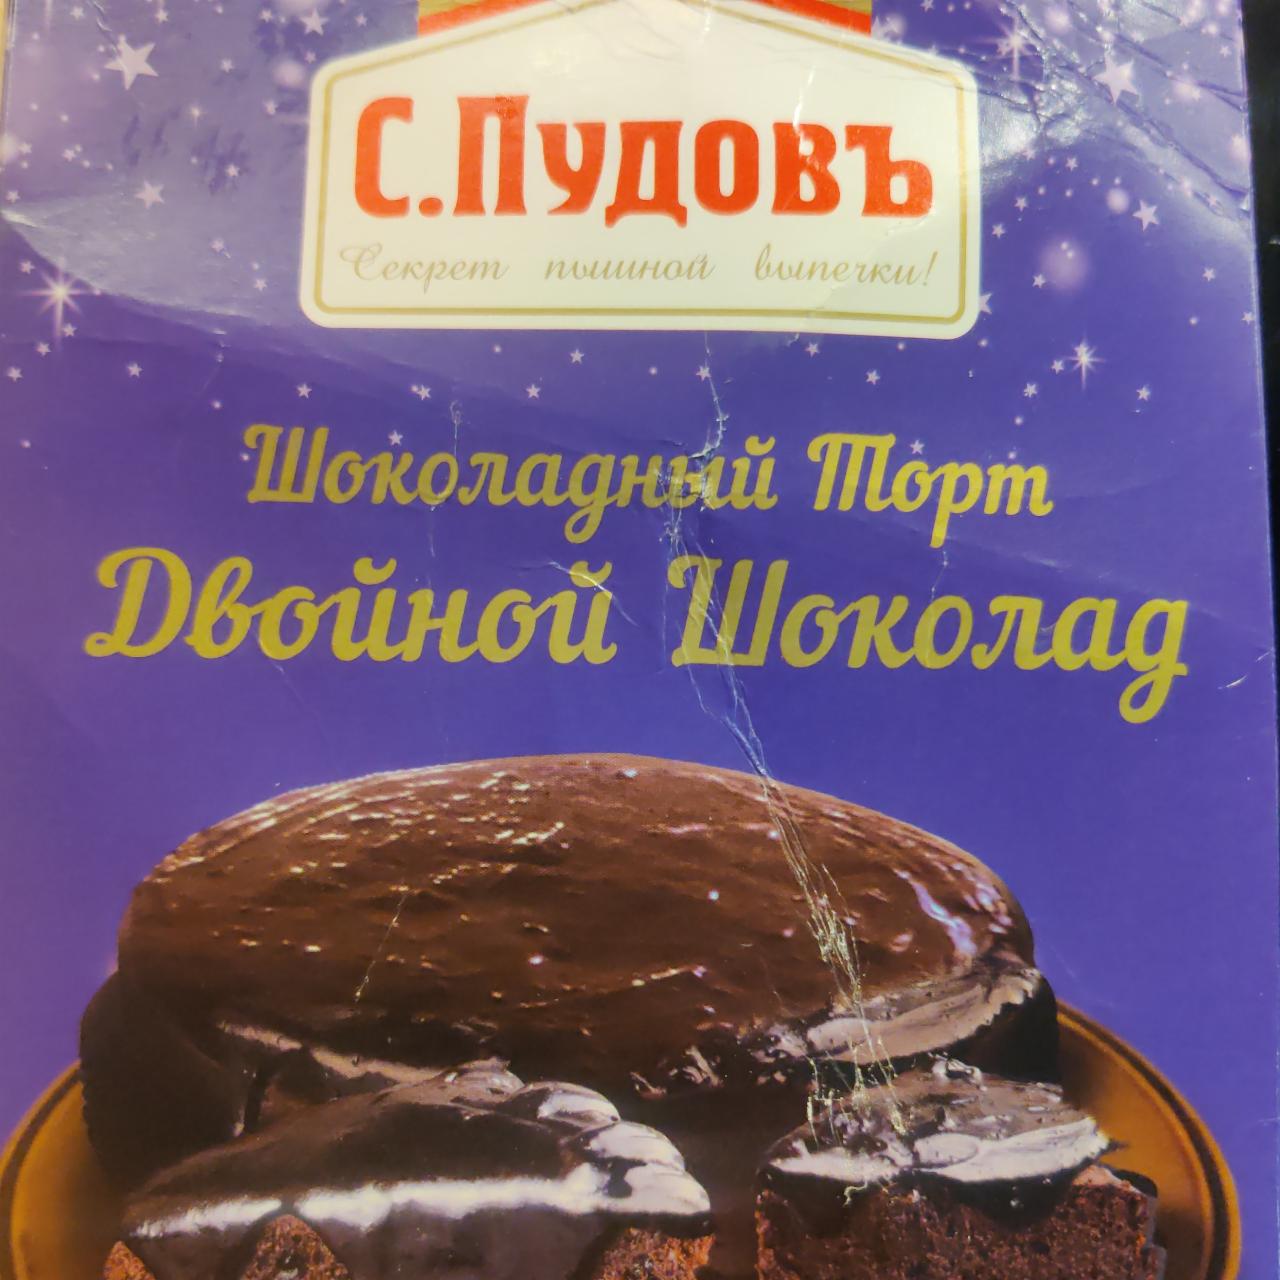 Фото - Шоколадный торт С. Пудов